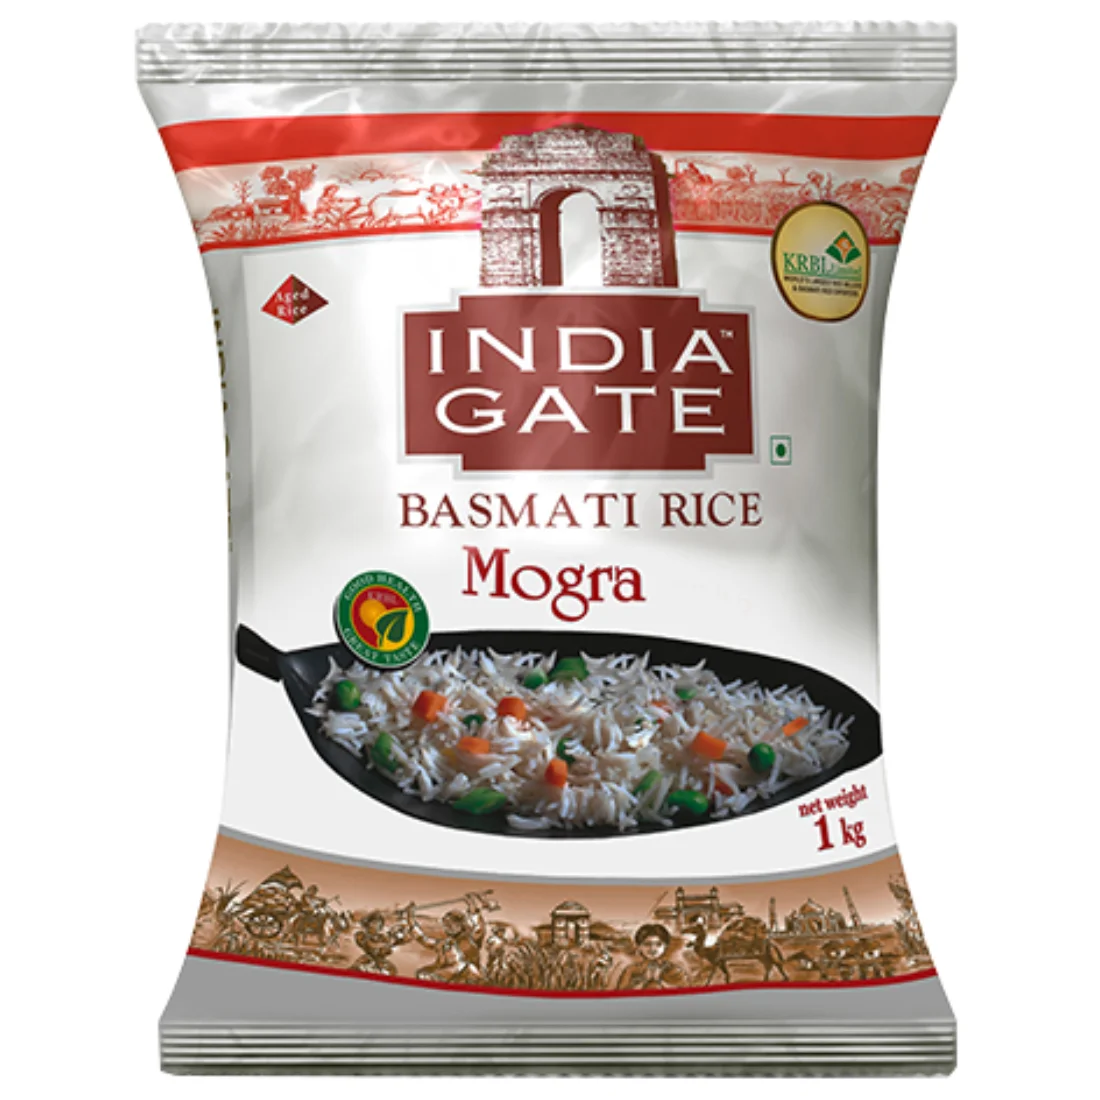 Indiagate Basmati Rice-Mogra 1 Kg